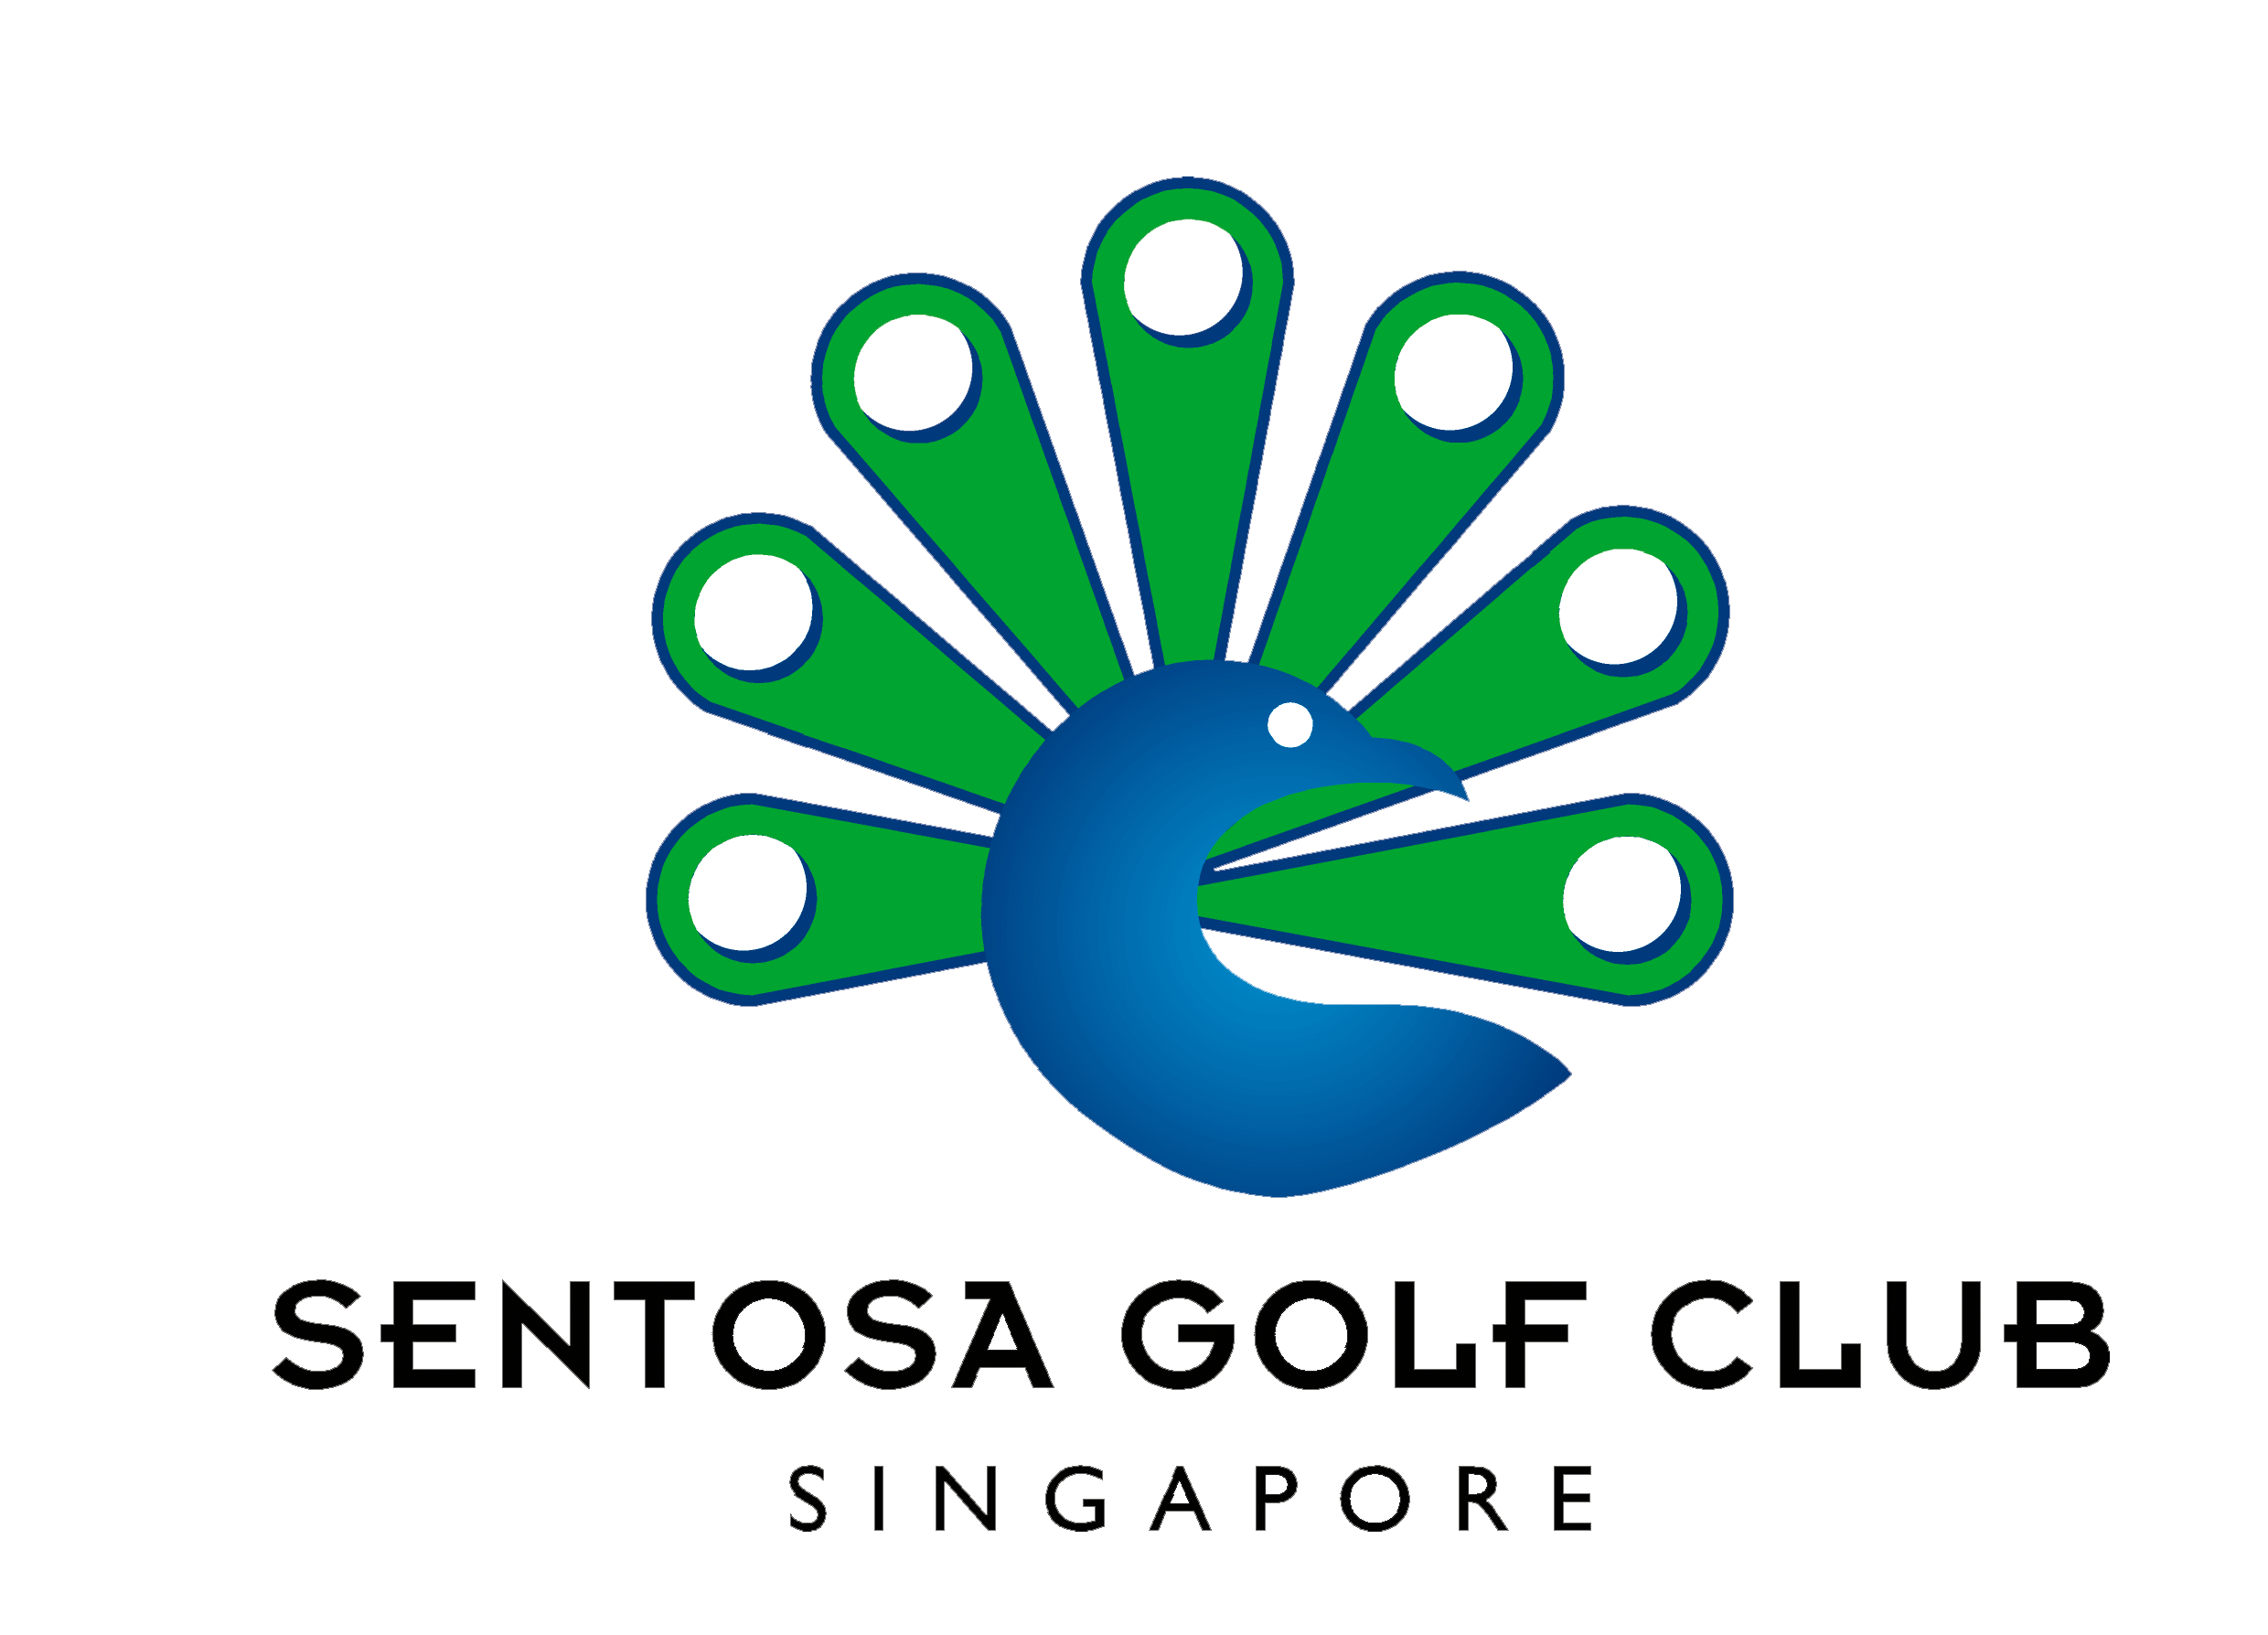 Image of SGC logo